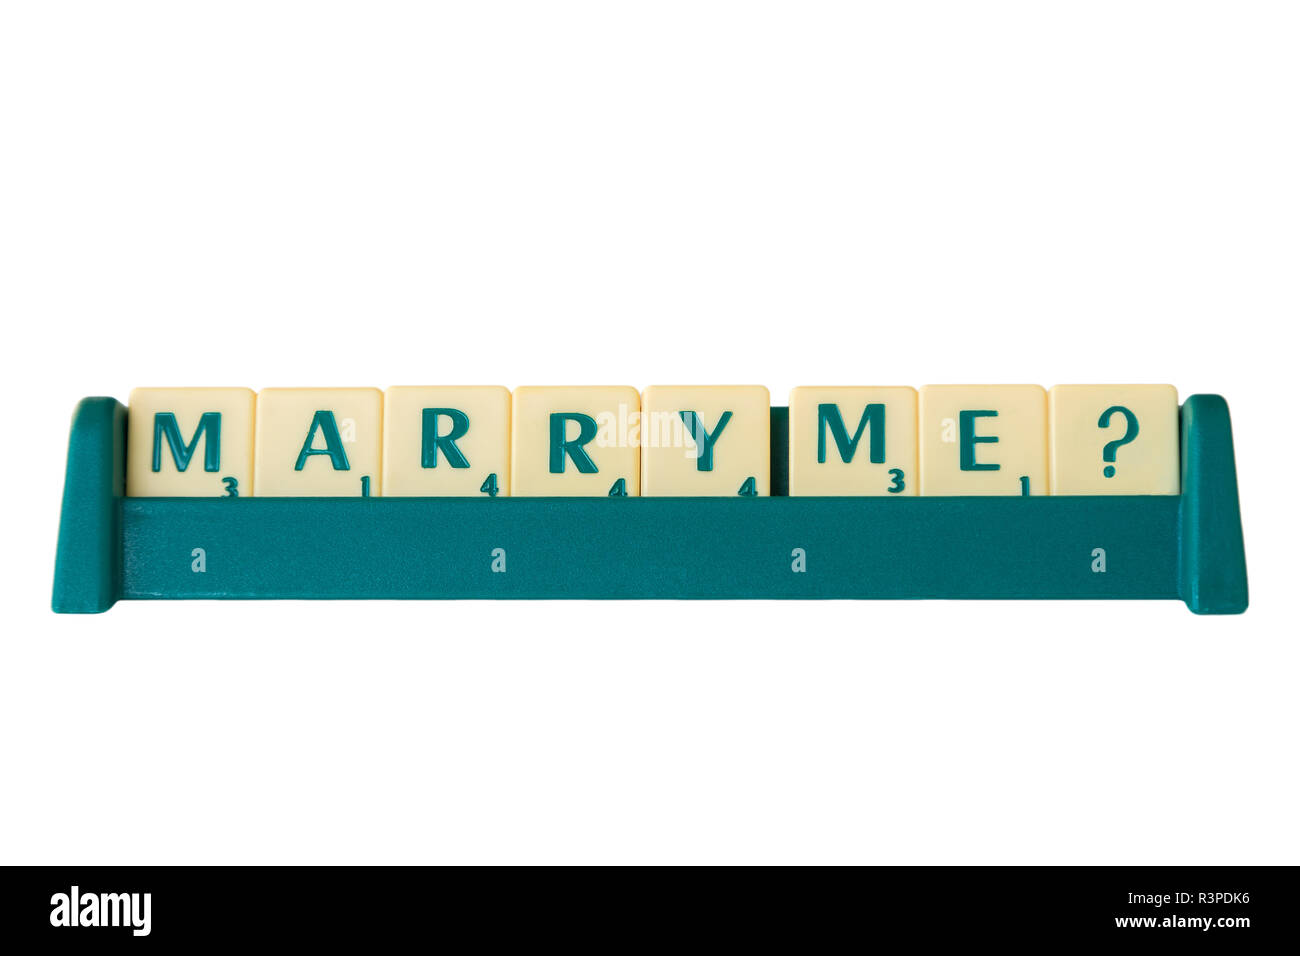 Jeu de Scrabble lettres avec valeur score sur un support formant l'expression 'Marry Me ?'. Isolé sur fond blanc. Banque D'Images